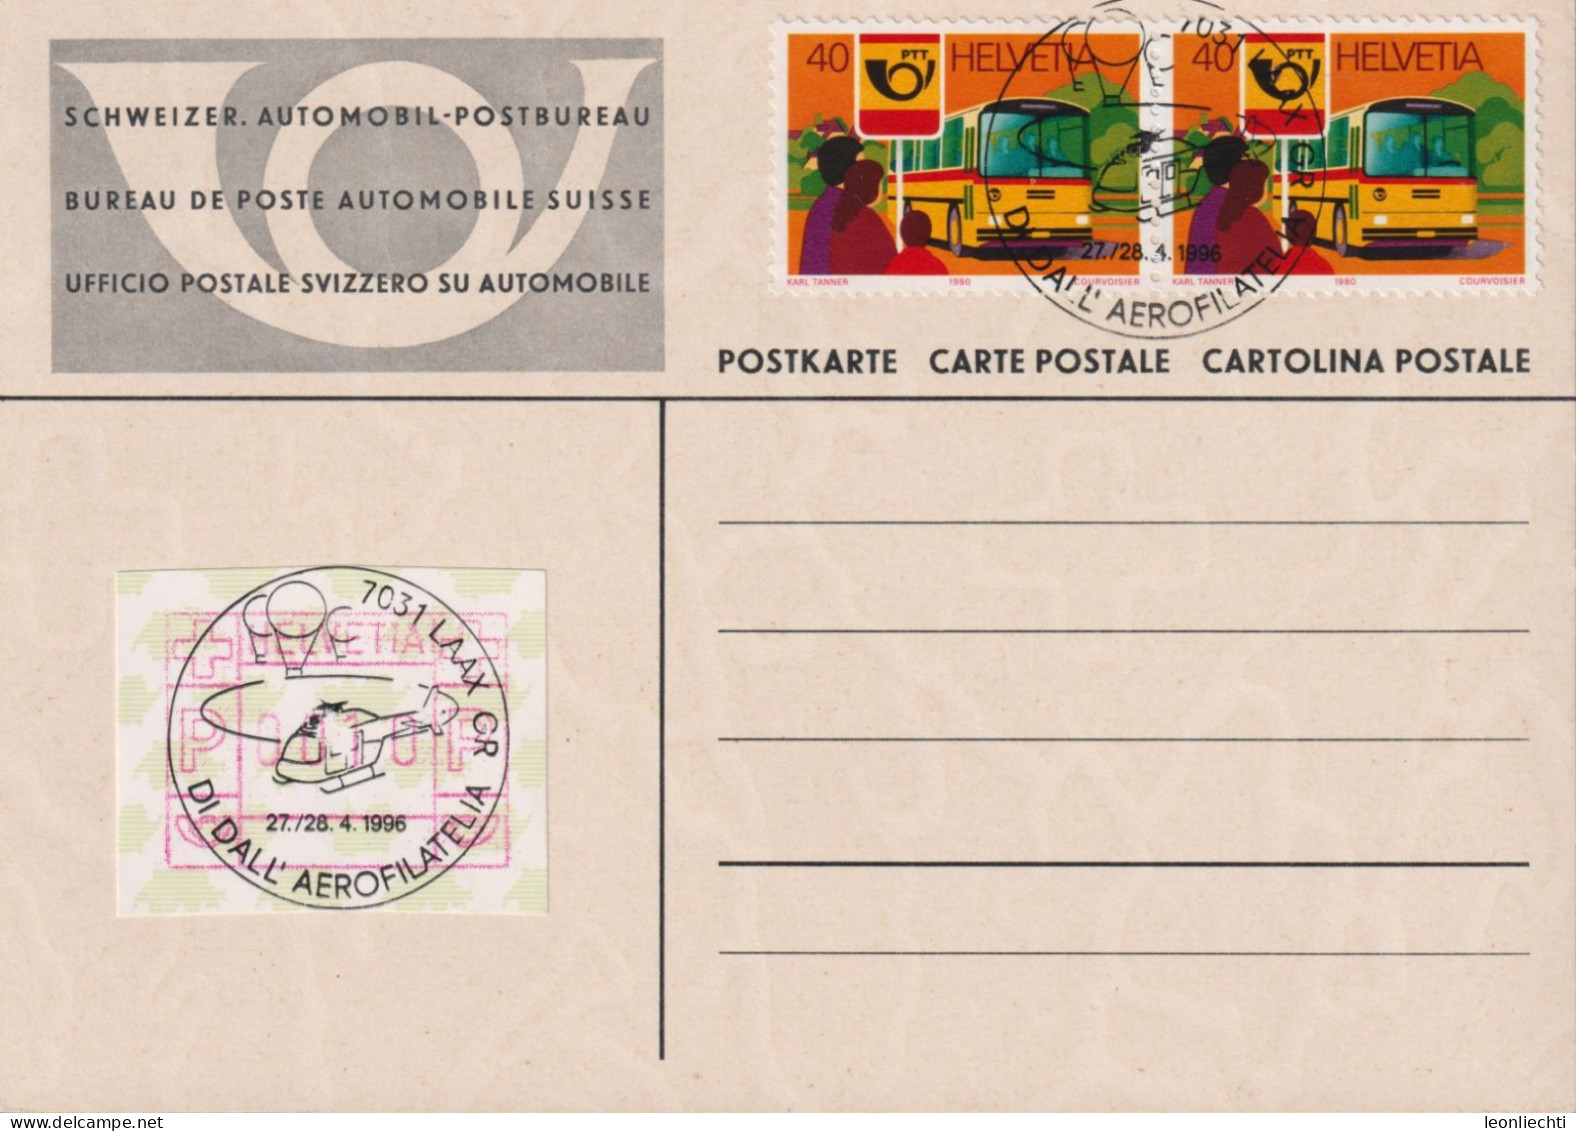 1999 Schweiz, Automobil-Postkarte, Zum:CH 646+ ATM, Mi:CH 1181+ATM Stempel: 7031LAAX, DI DALL`AEROFILATELIA - Briefe U. Dokumente